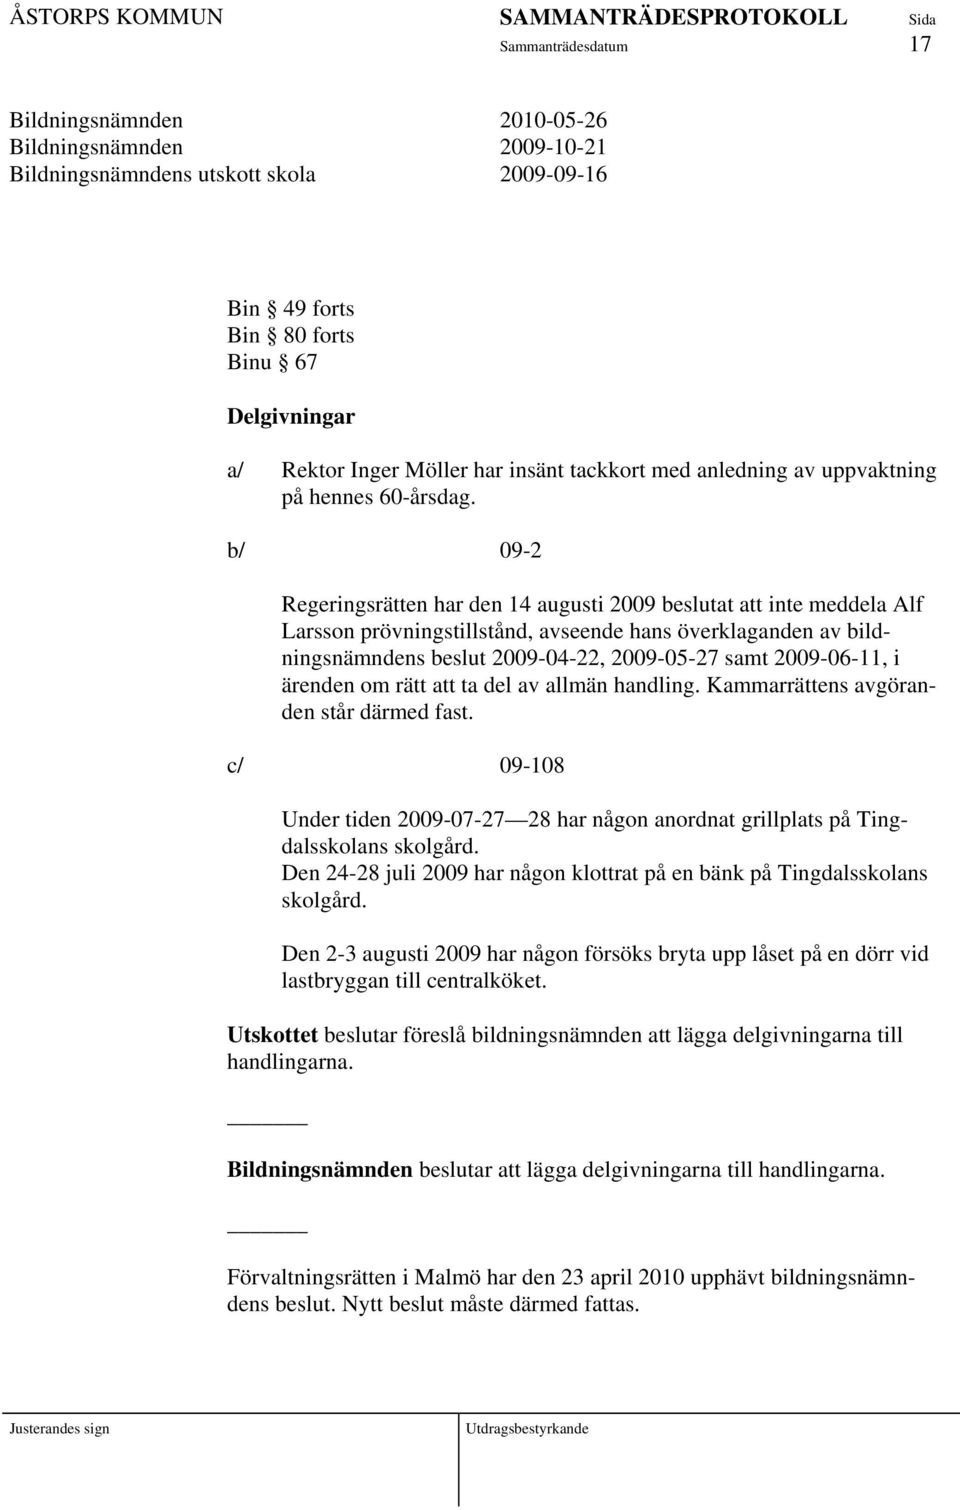 b/ 09-2 Regeringsrätten har den 14 augusti 2009 beslutat att inte meddela Alf Larsson prövningstillstånd, avseende hans överklaganden av bildningsnämndens beslut 2009-04-22, 2009-05-27 samt